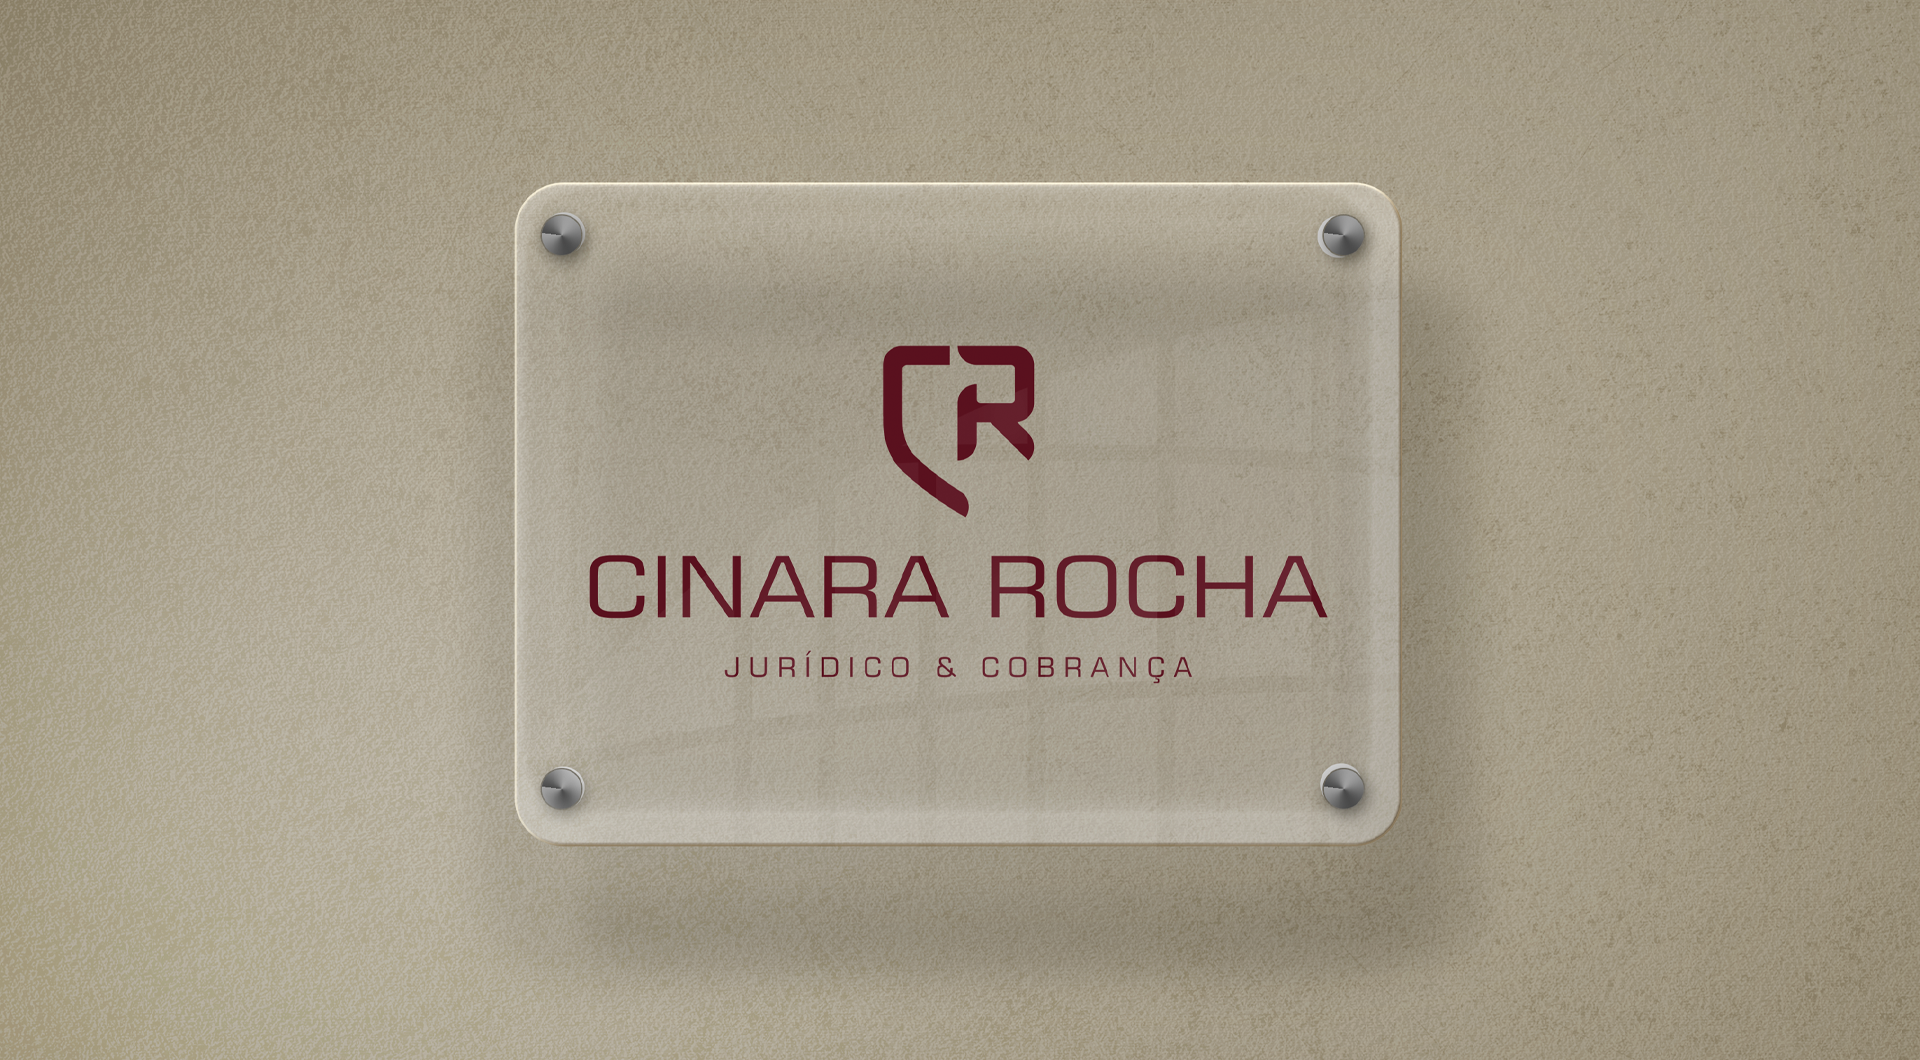 Cinara Rocha - Aplicação de logo em placa de acrílico